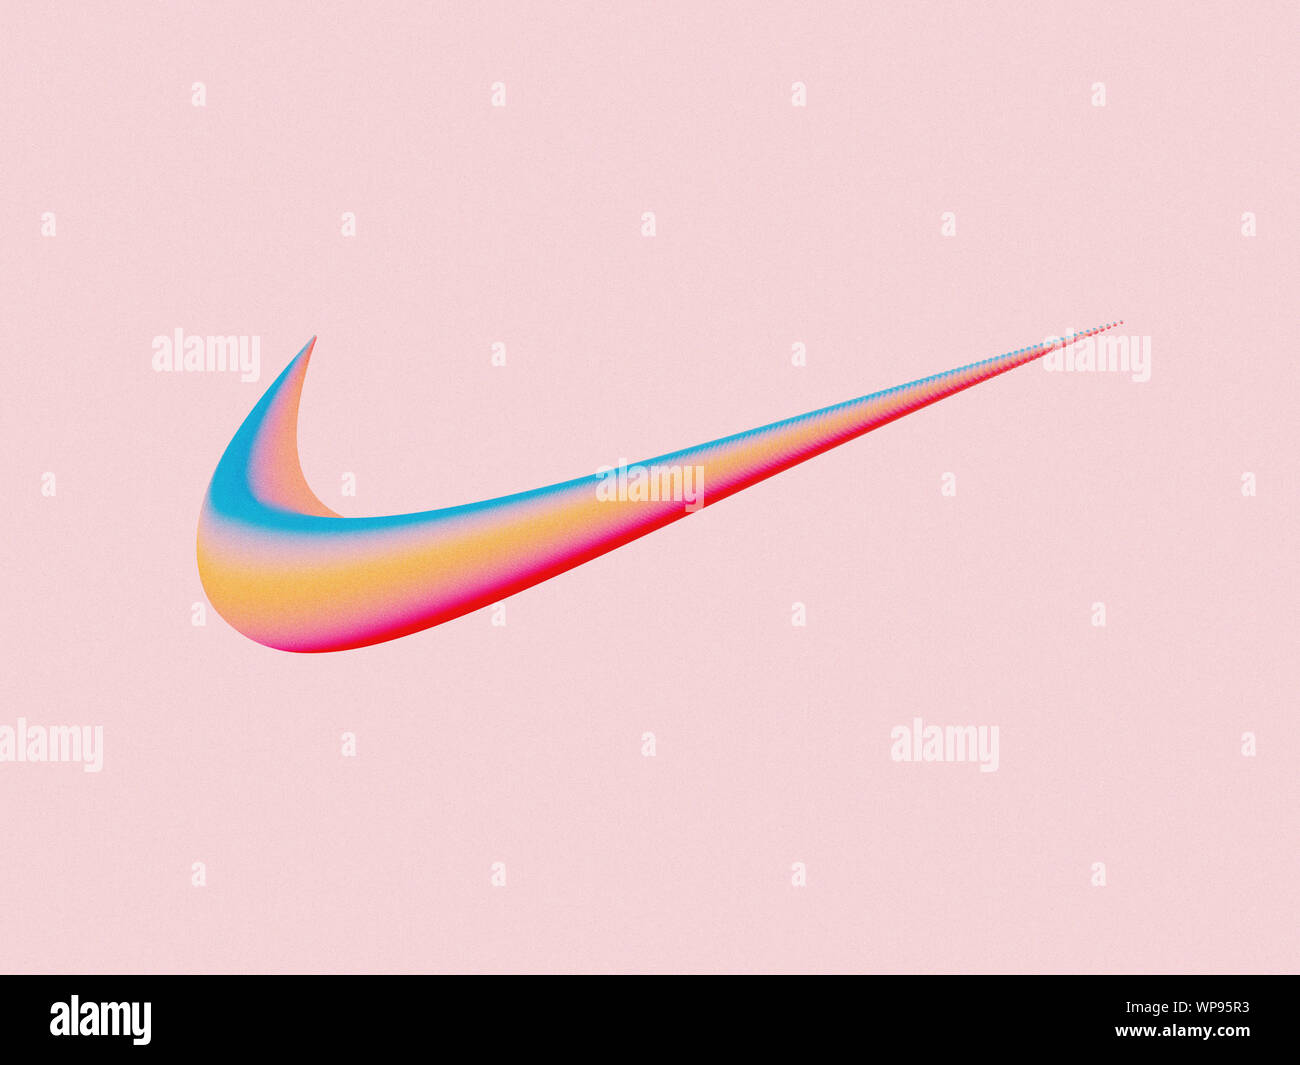 Une illustration artistique de la Nike swoosh logo qui fait avec la technique de mélange de vecteur, et placé sur un fond rose. Banque D'Images